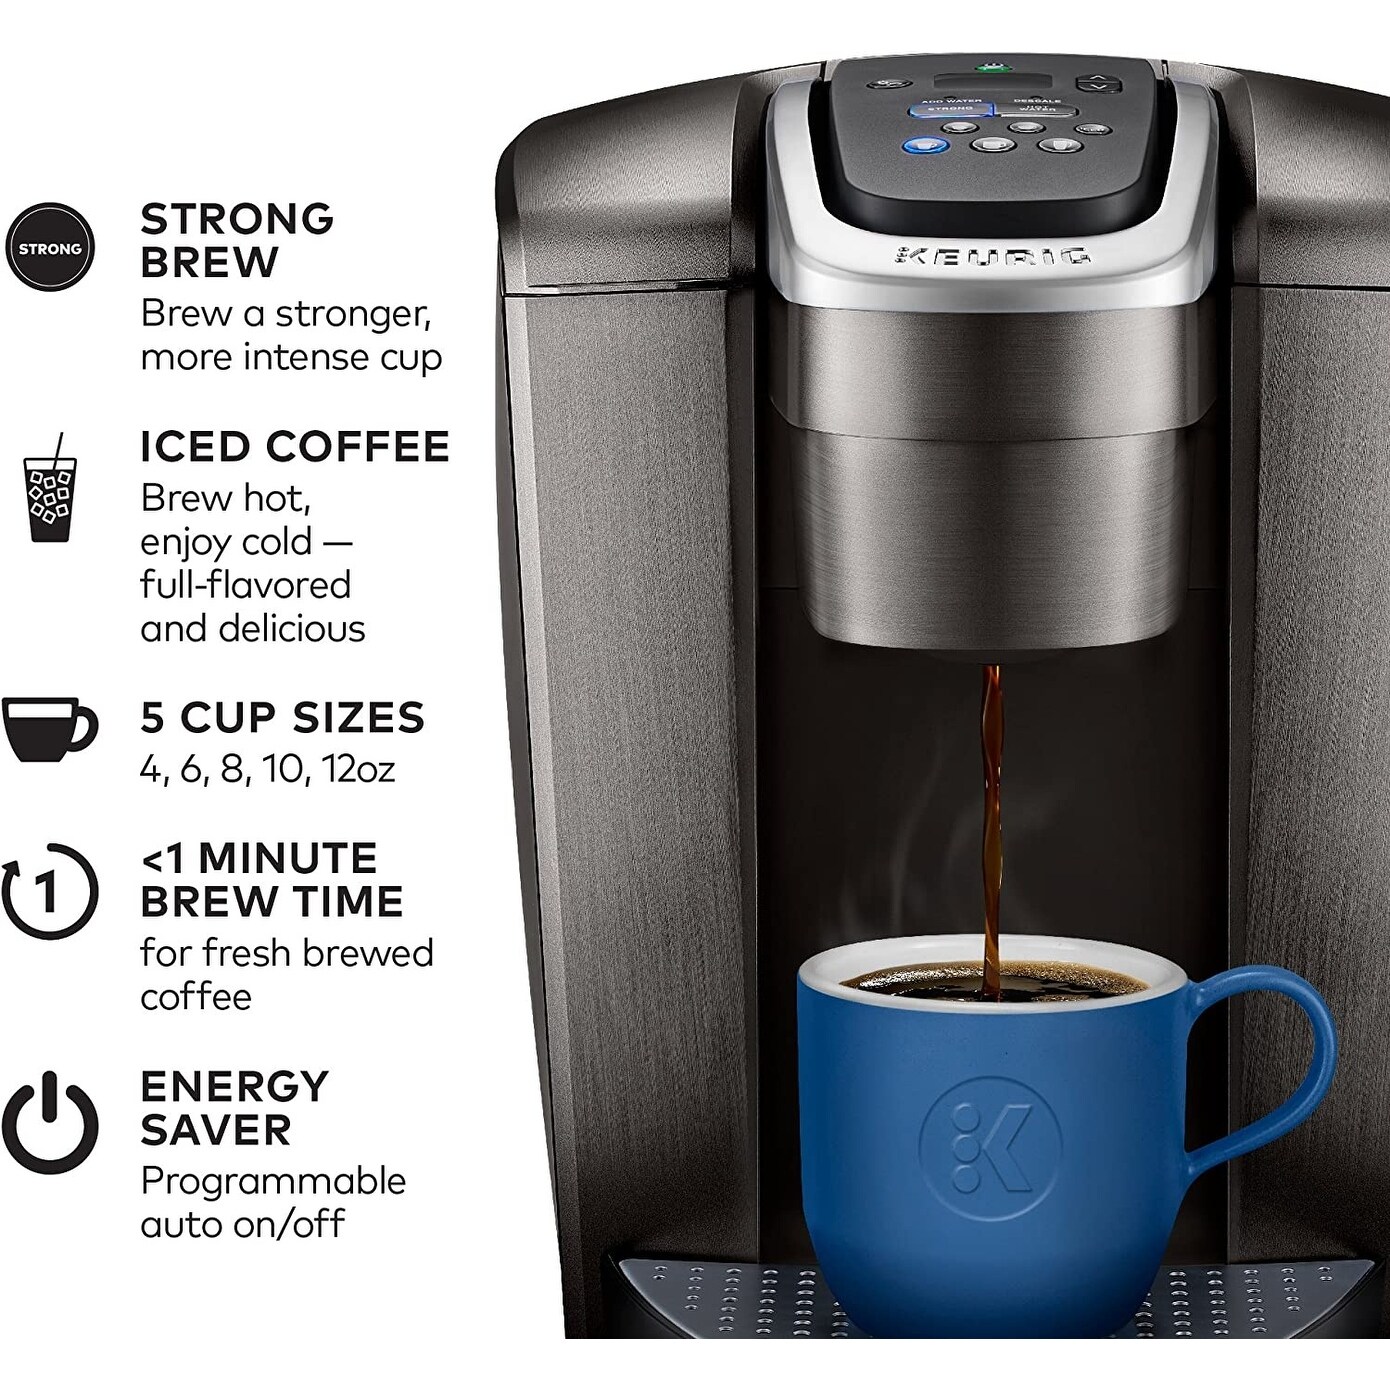 New KEURIG K-ICED COFFEE MAKER #kcups #coffeemaker #icedcoffee #keurig, keurig iced coffee